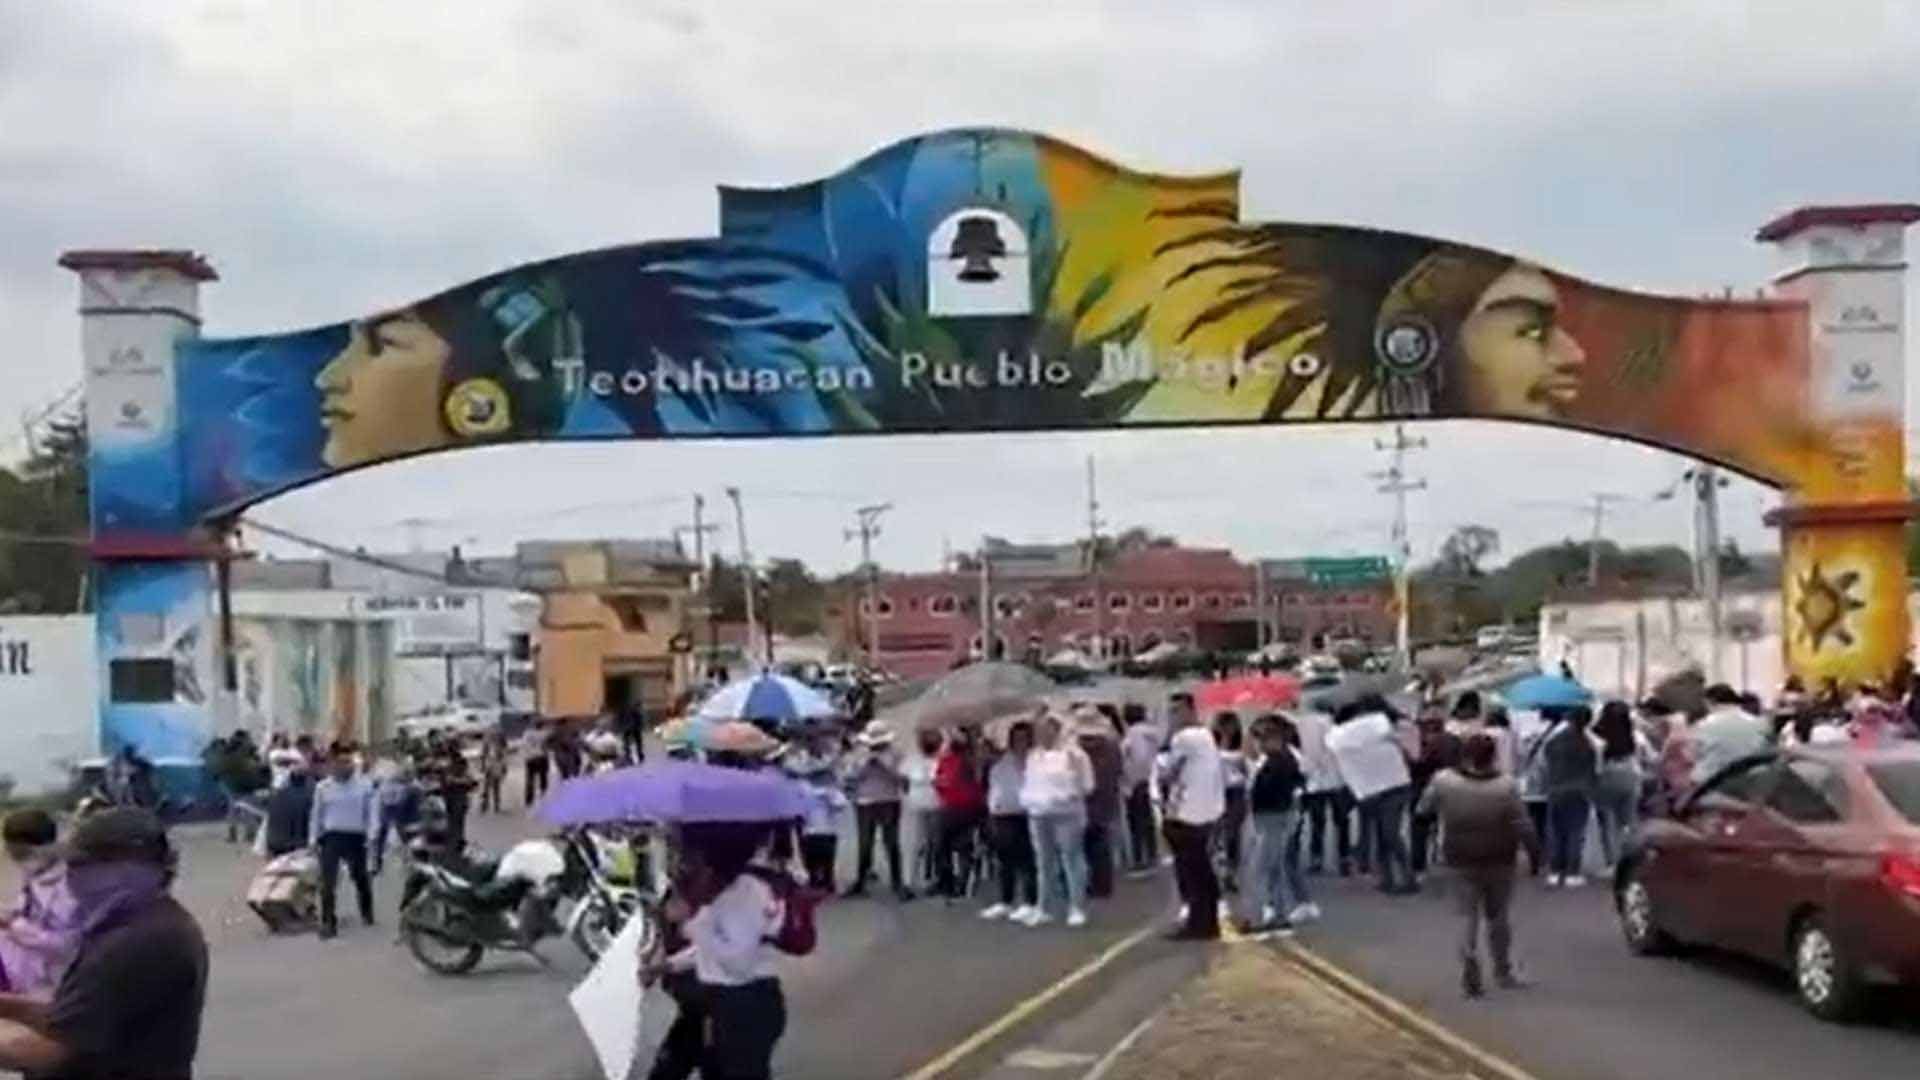 Protestan por muerte de adolescente en Teotihuacán